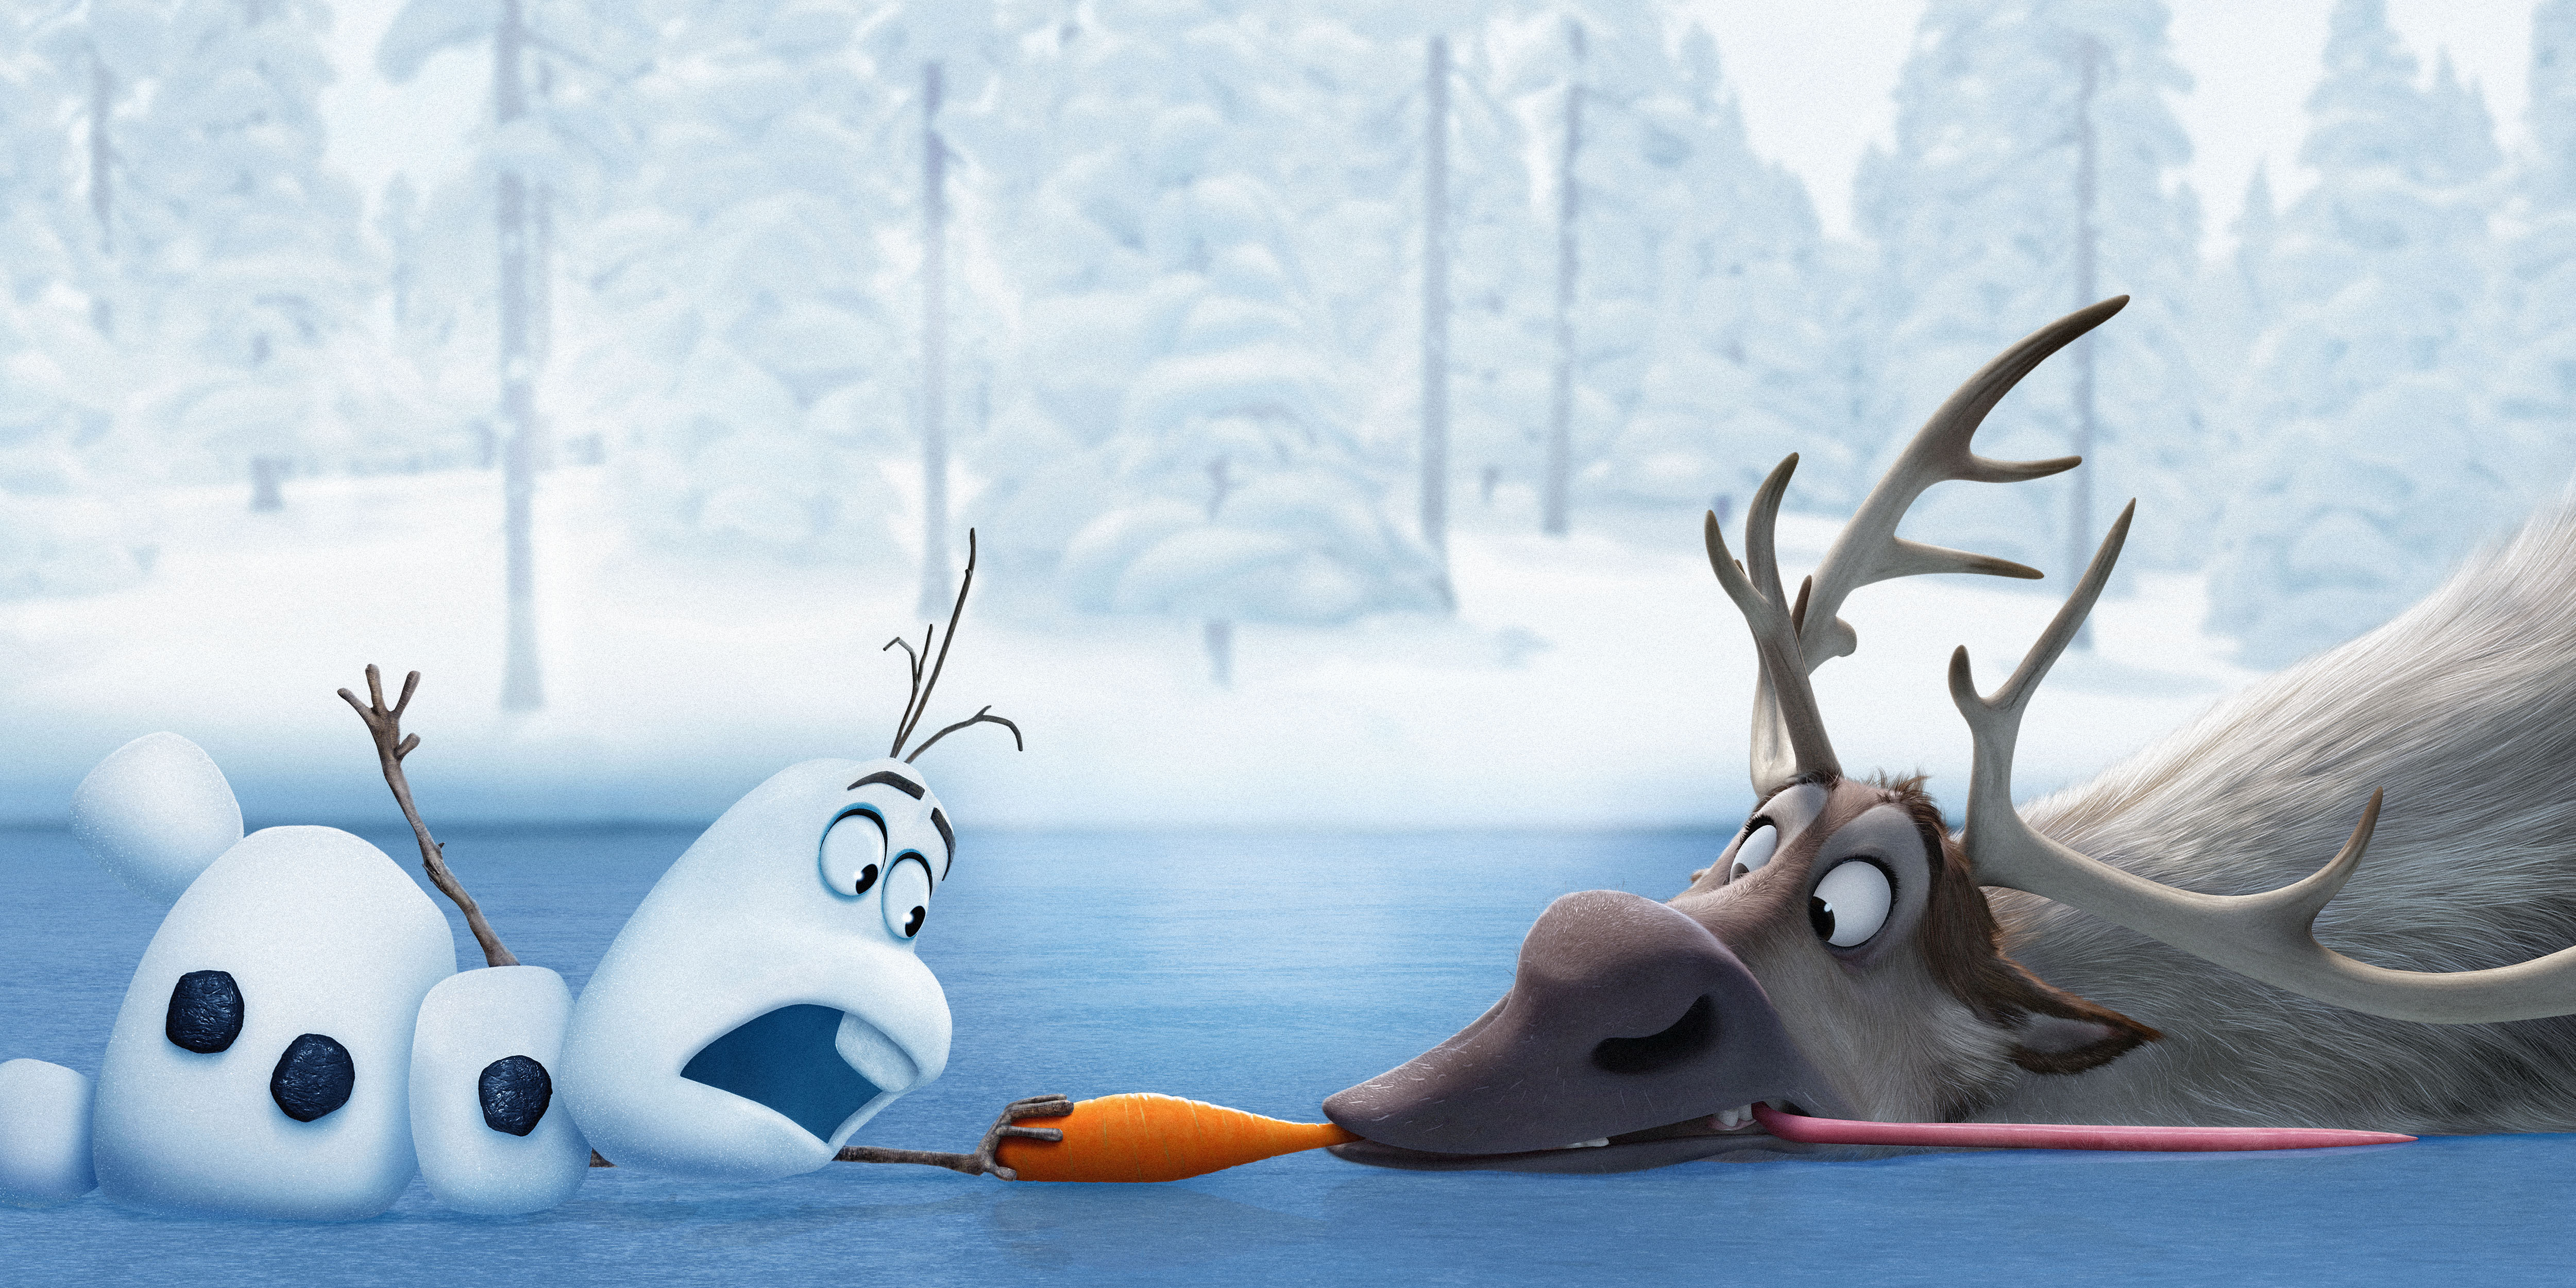 Disney Frozen Wallpaper Olaf Fr